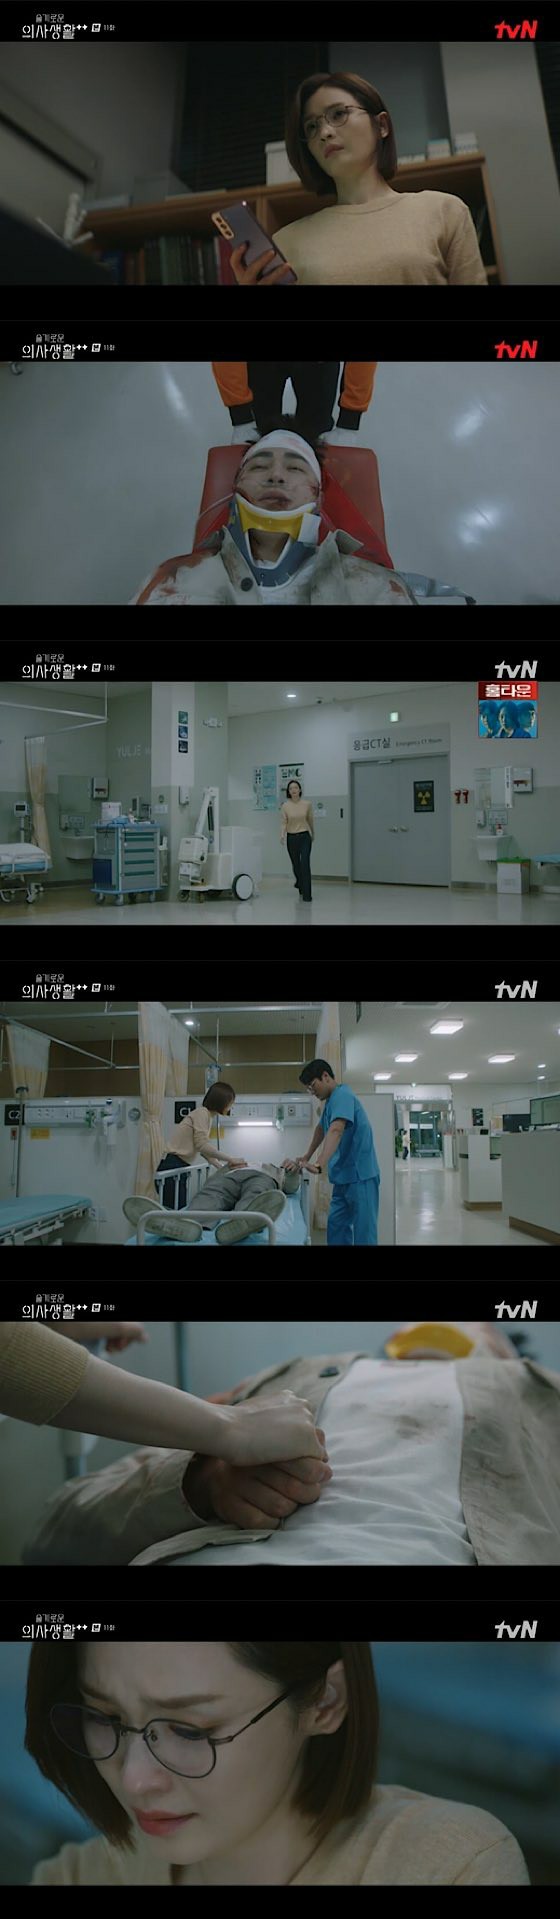 ≪ละครเกาหลี NOW≫ "Wise Doctor Life Season 2" EP11 โช จองซอก โดนปล้นวันเกิด ... จอน มิโด = เรื่องย่อ / Netabare